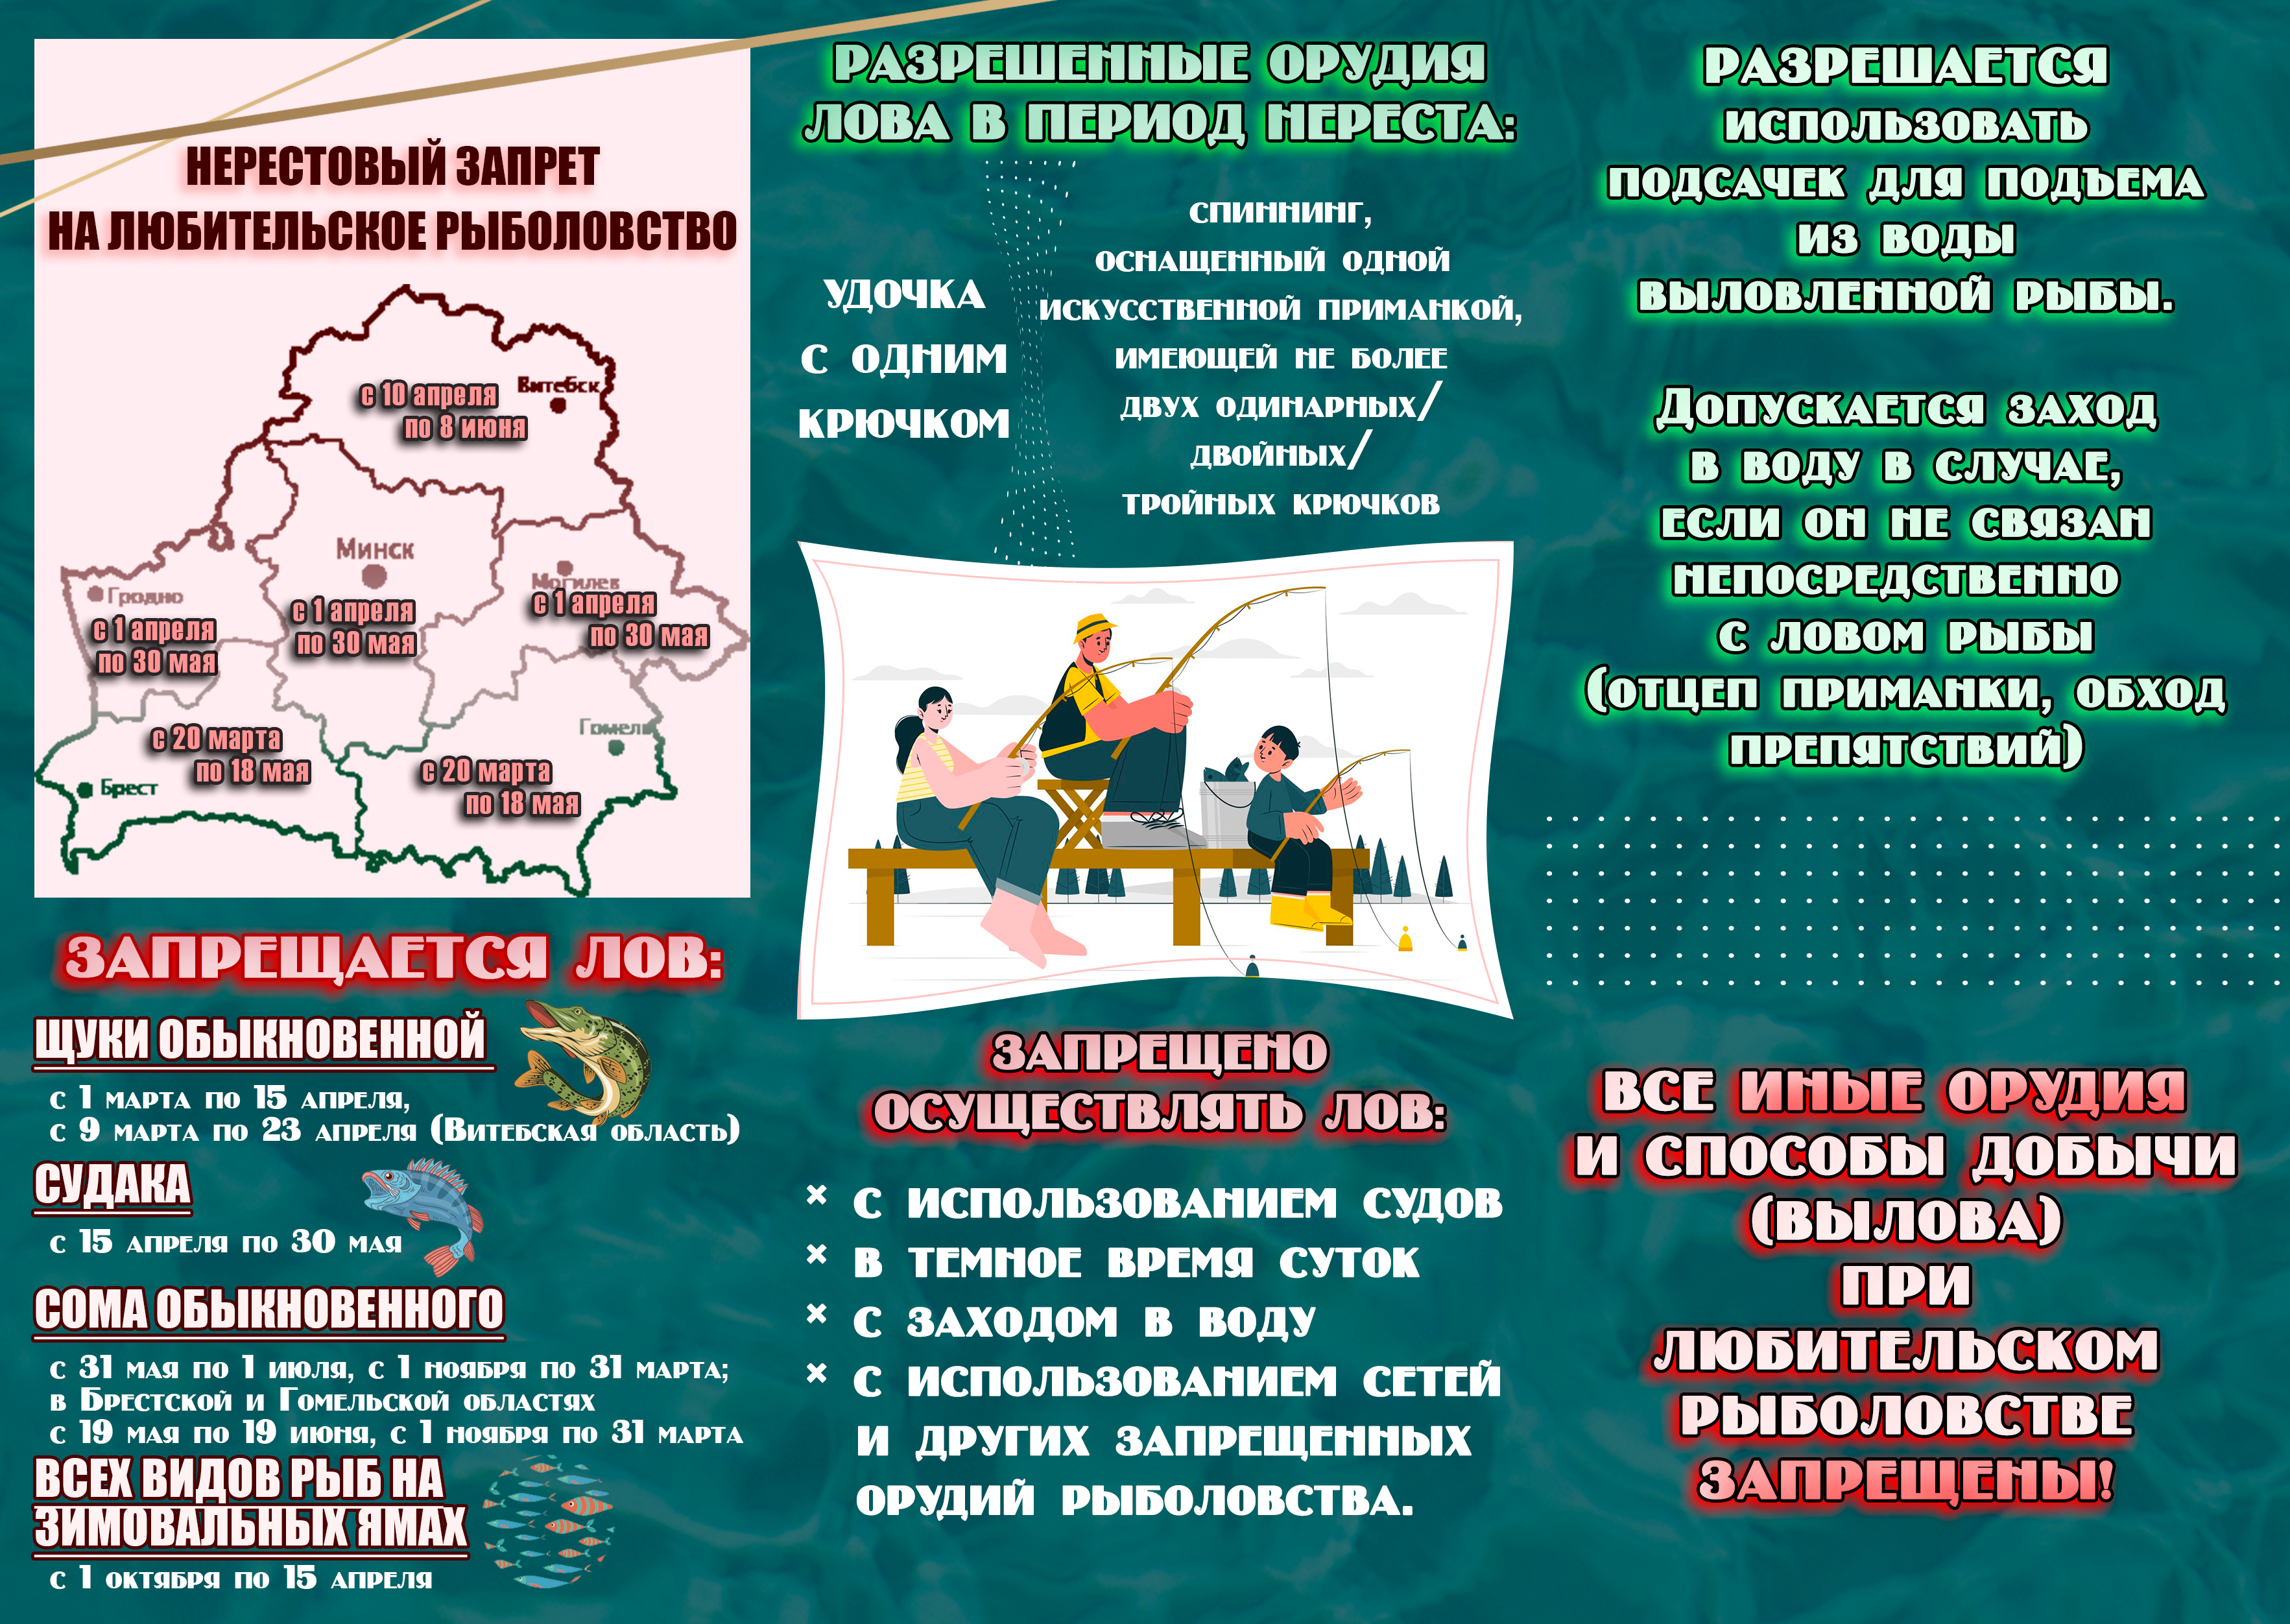 Специальное комплексное мероприятие «Нерест» пройдет в Могилевской области